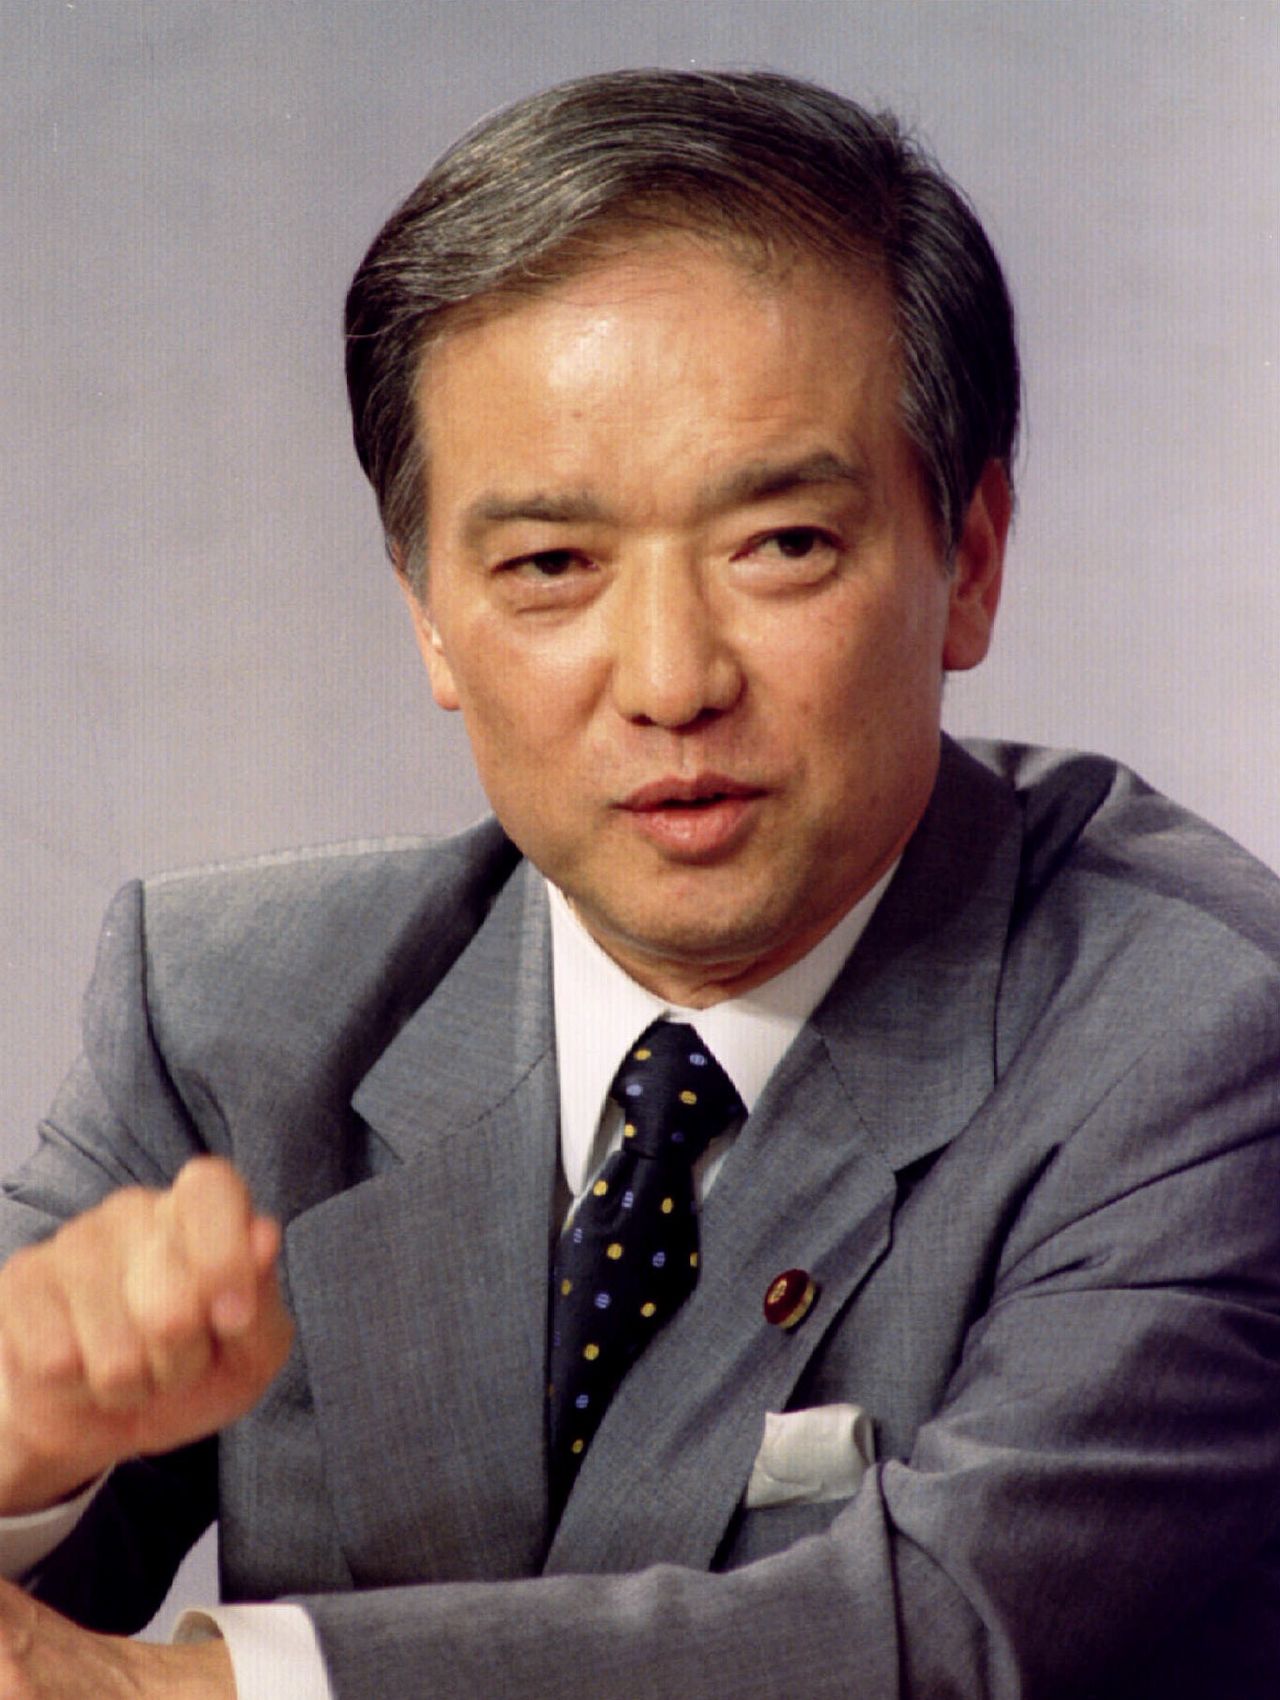 رئيس الوزراء السابق كايفو توشيكي في التاسع والعشرين من يونيو/ حزيران 1994. (رويترز)